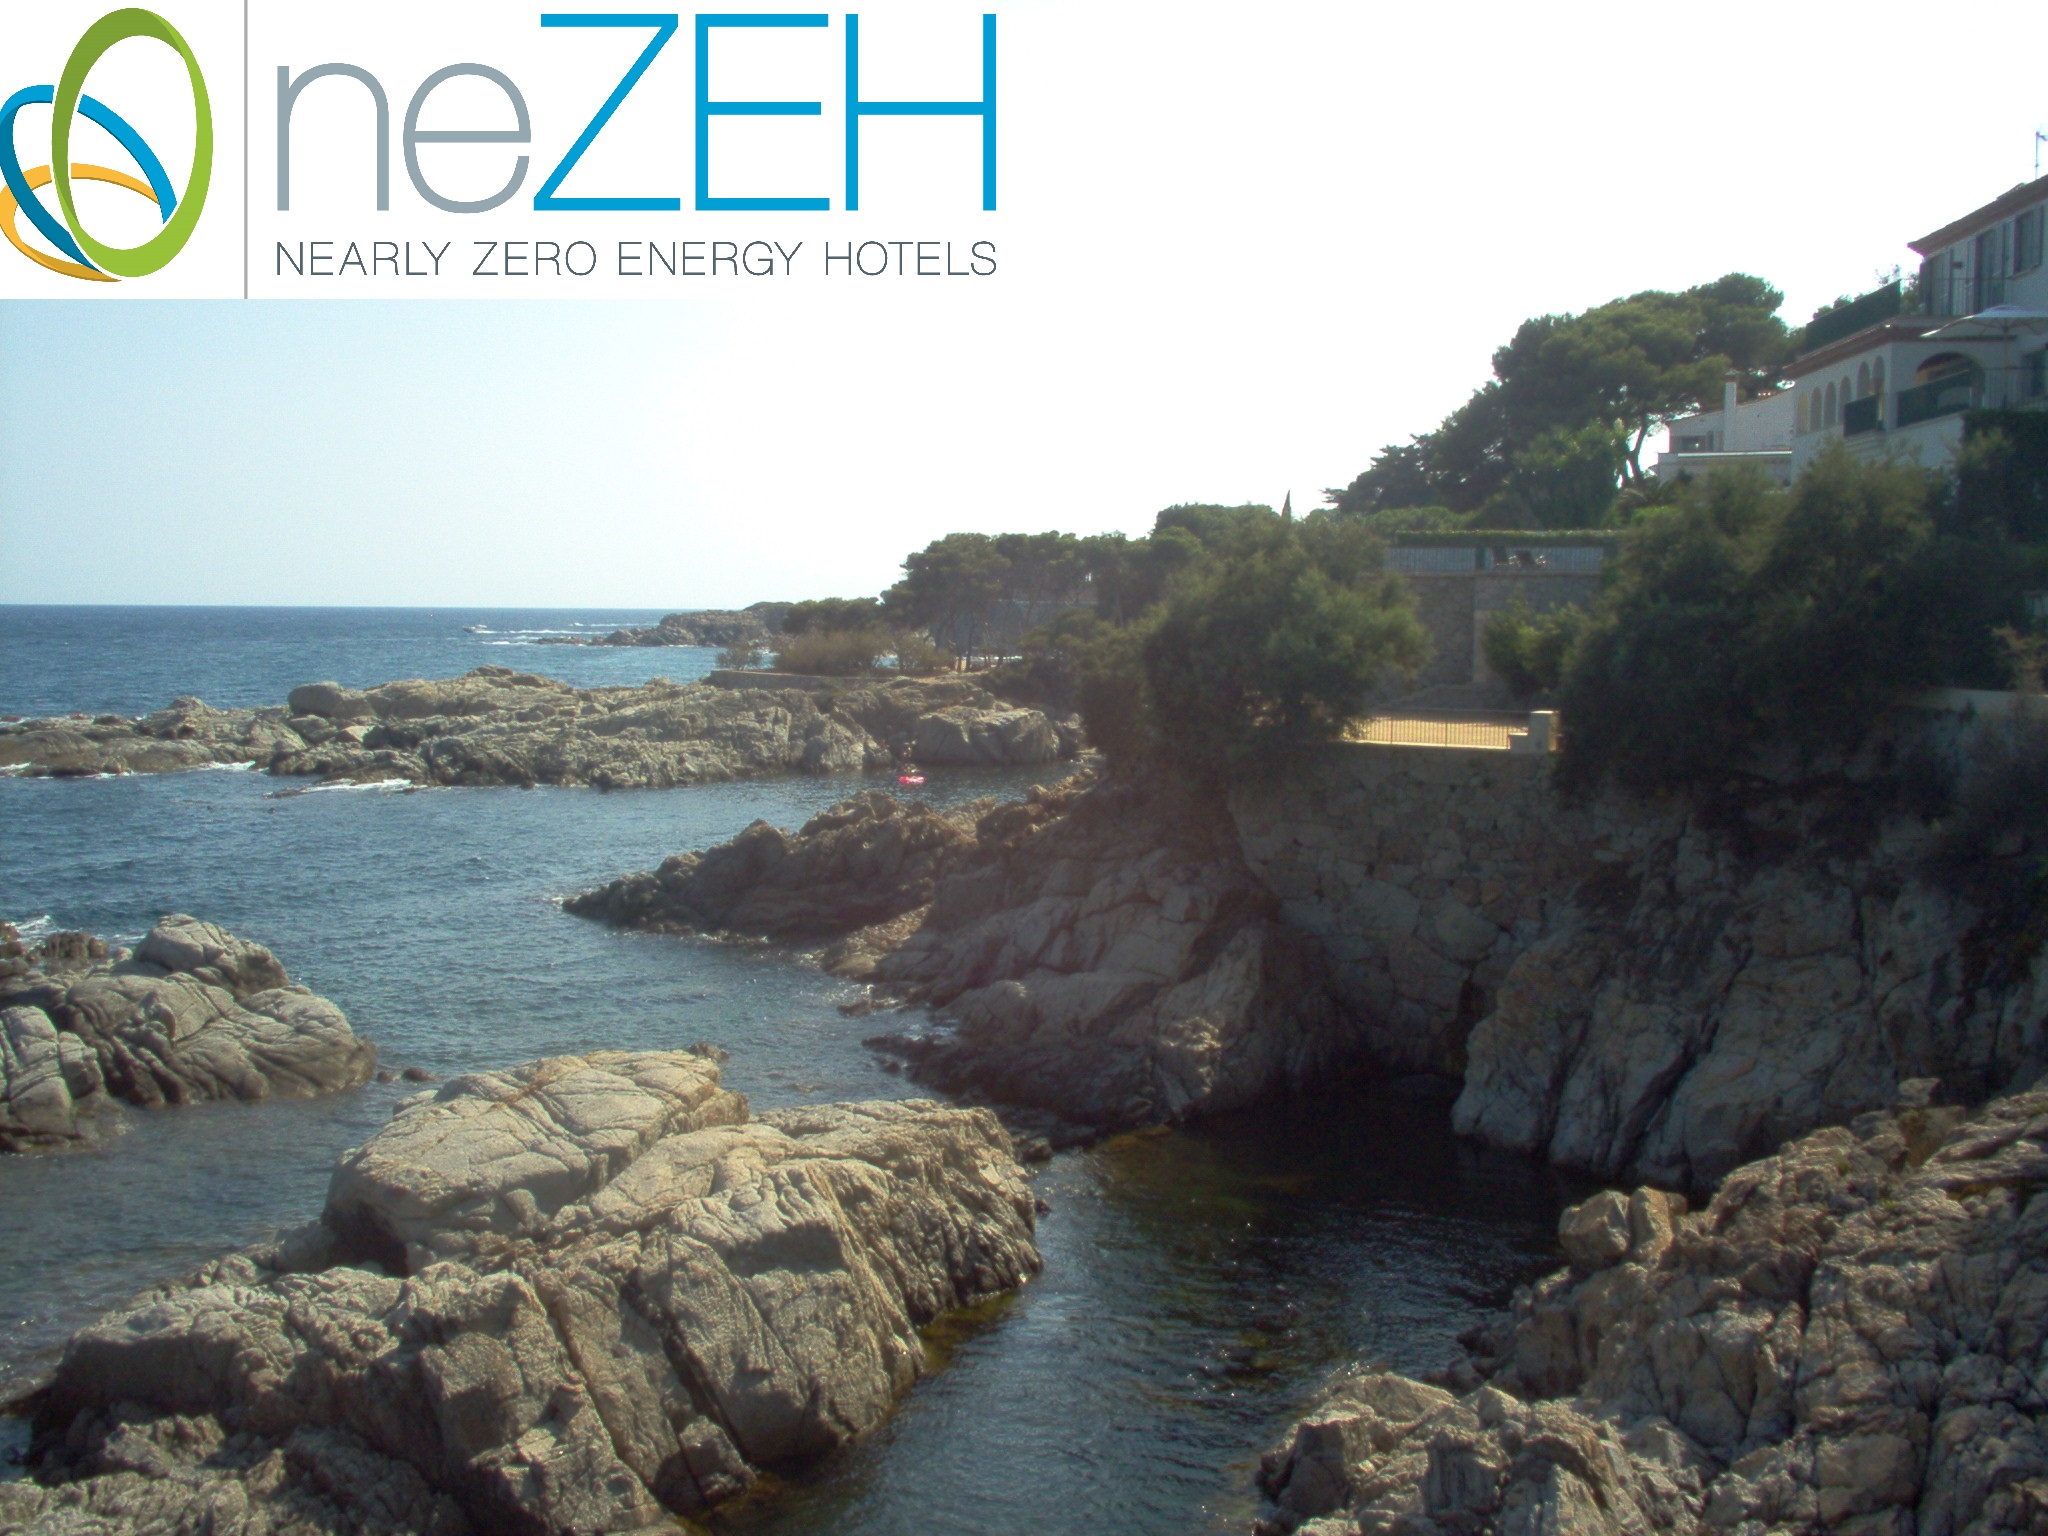 Spanish Pilot Hotels endorsing neZEH status!